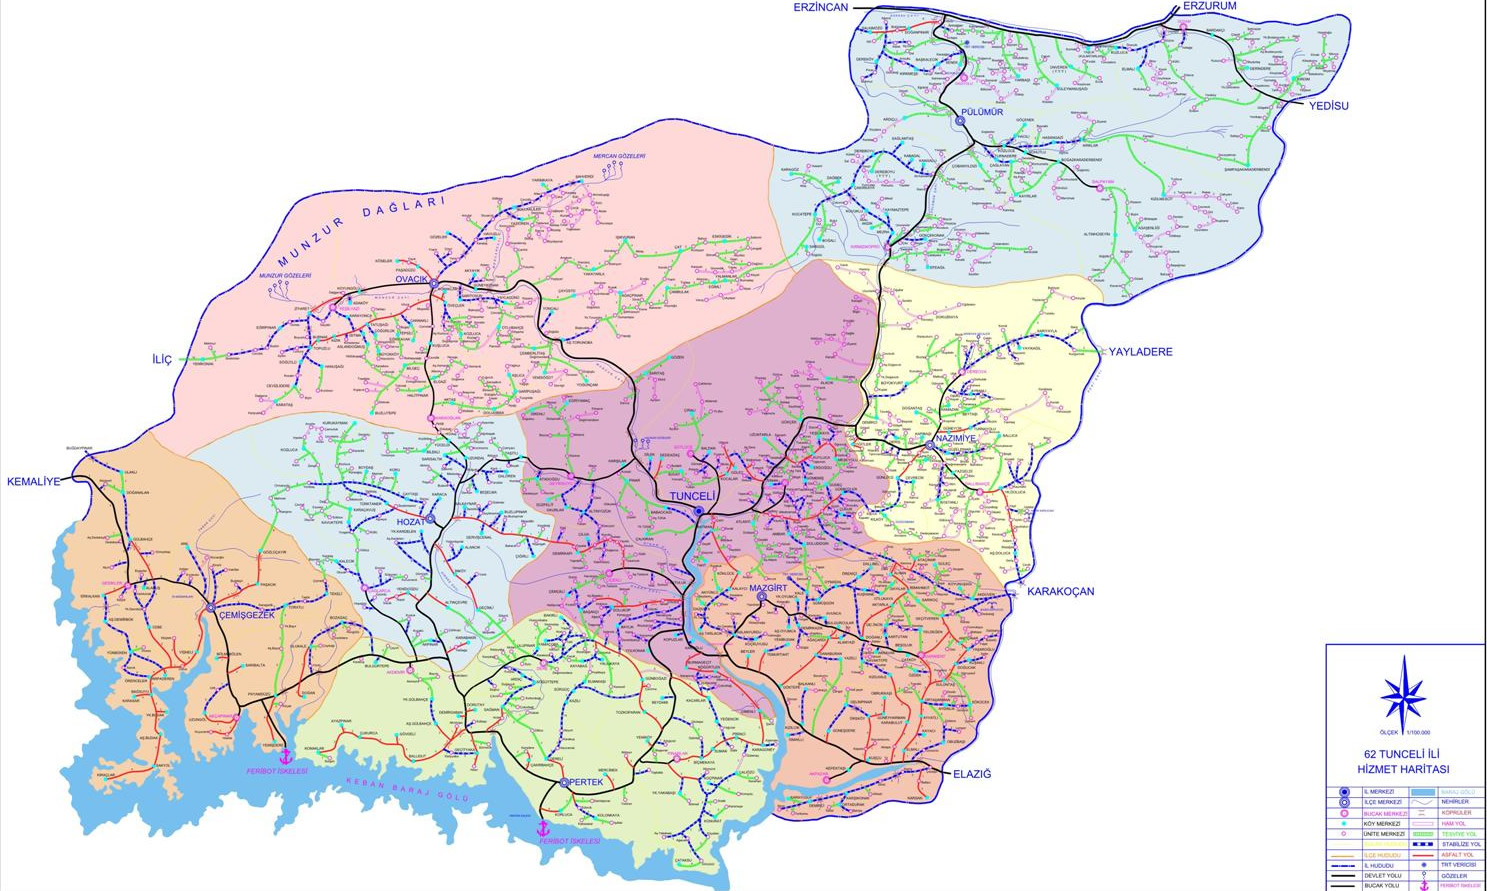 tunceli province map